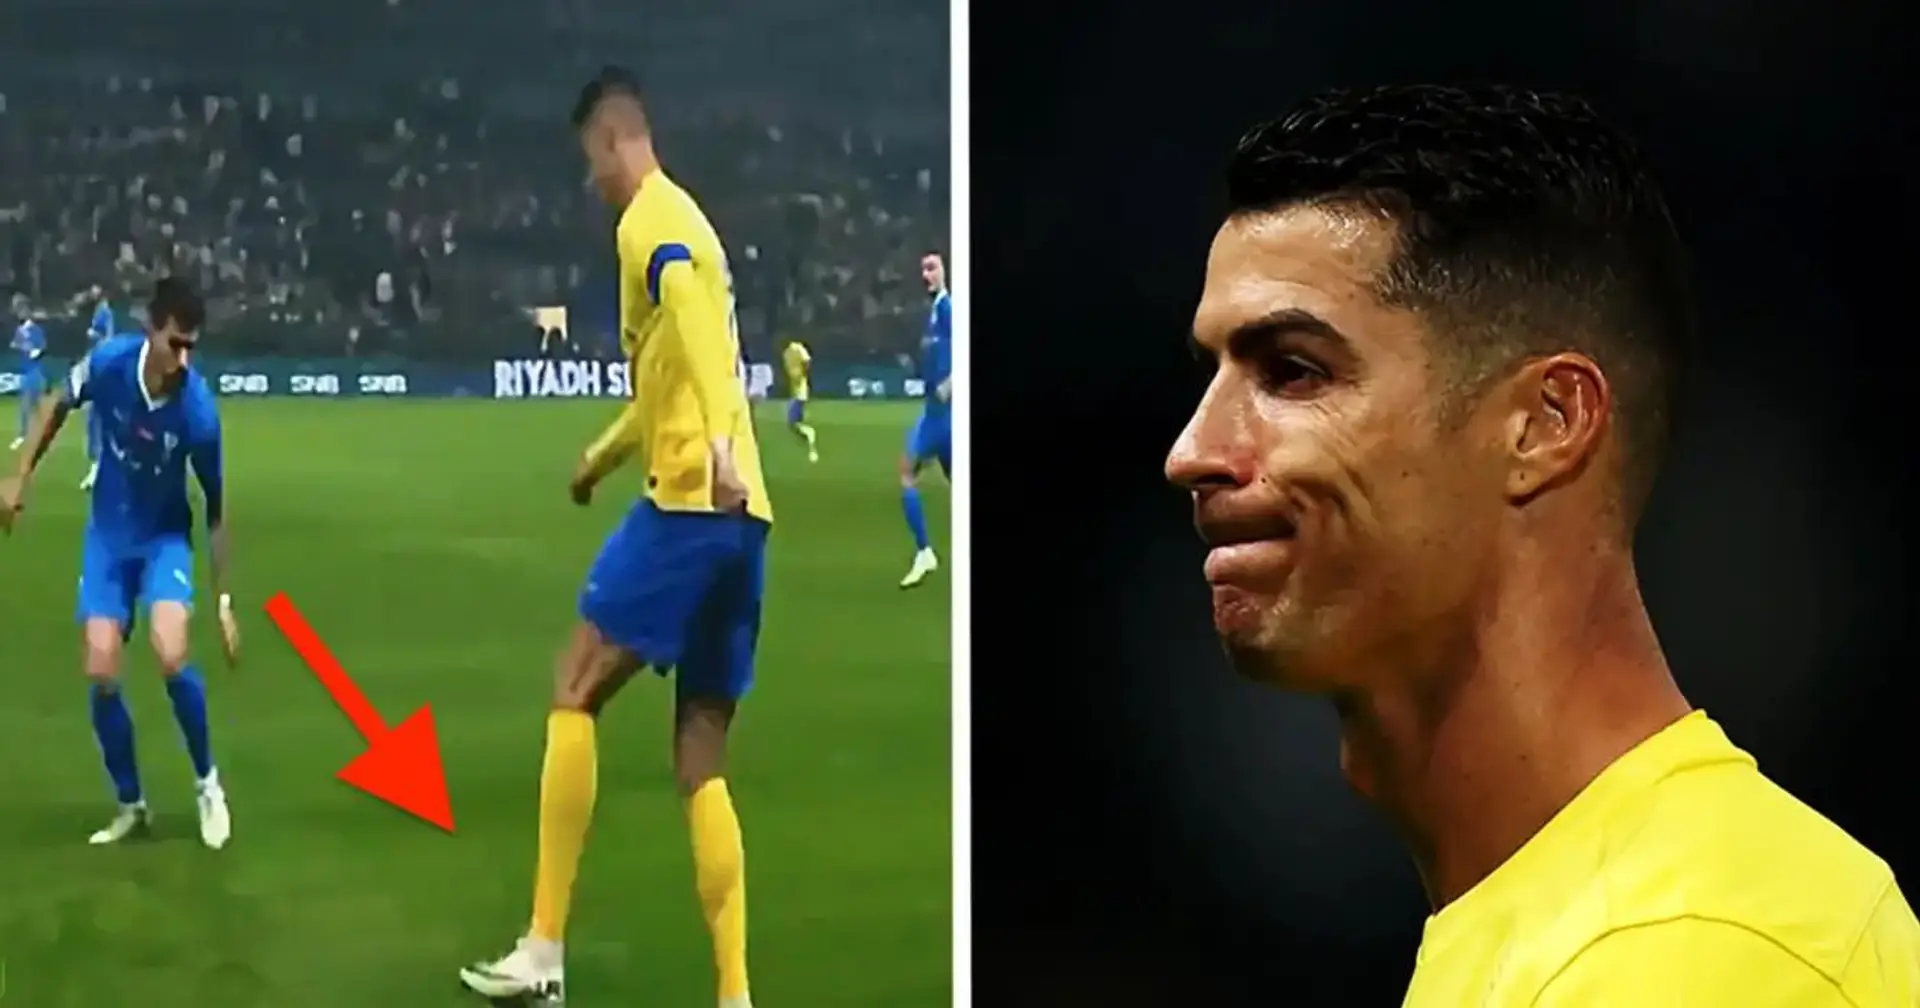 Ronaldos missglücktes Dribbling gegen Al-Hilal wurde bereits 5 Millionen Mal angesehen